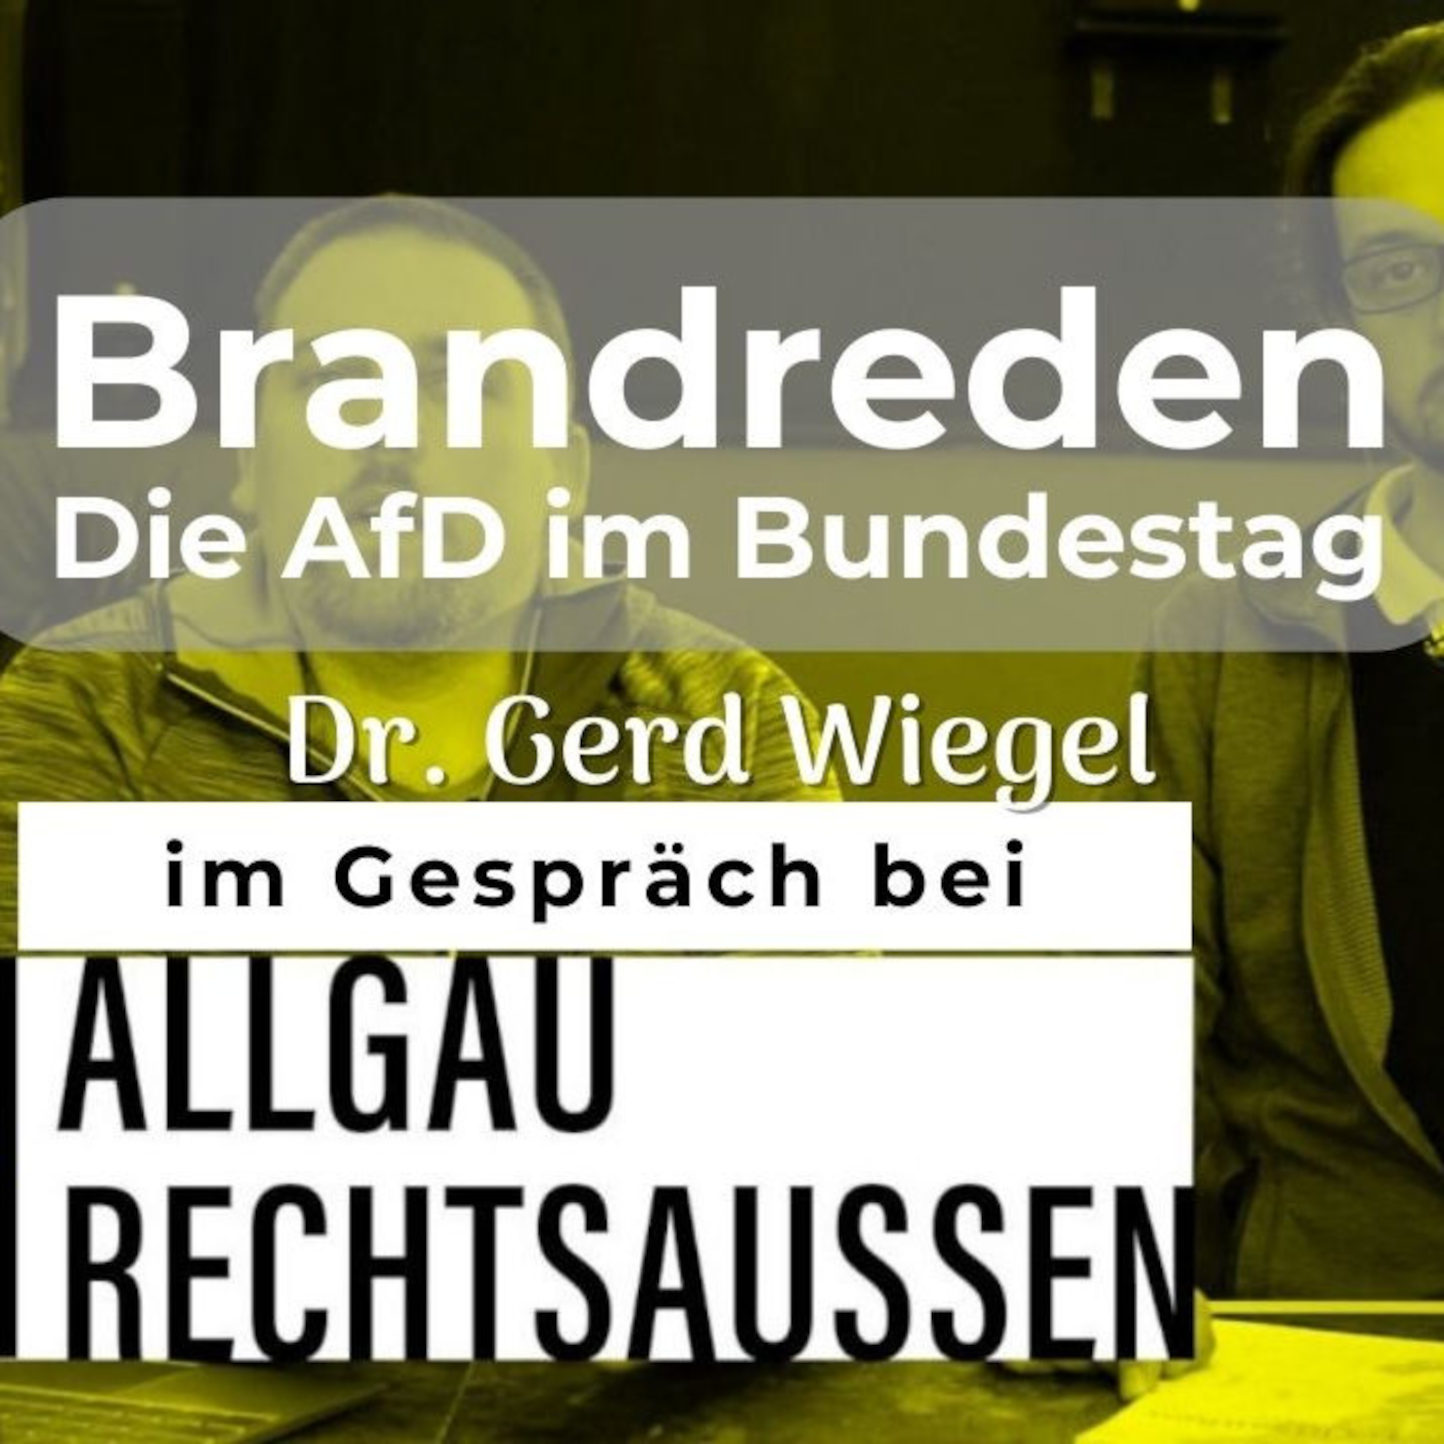 Brandreden. Die AfD im Bundestag im Gespräch bei Allgäu rechtsaußen